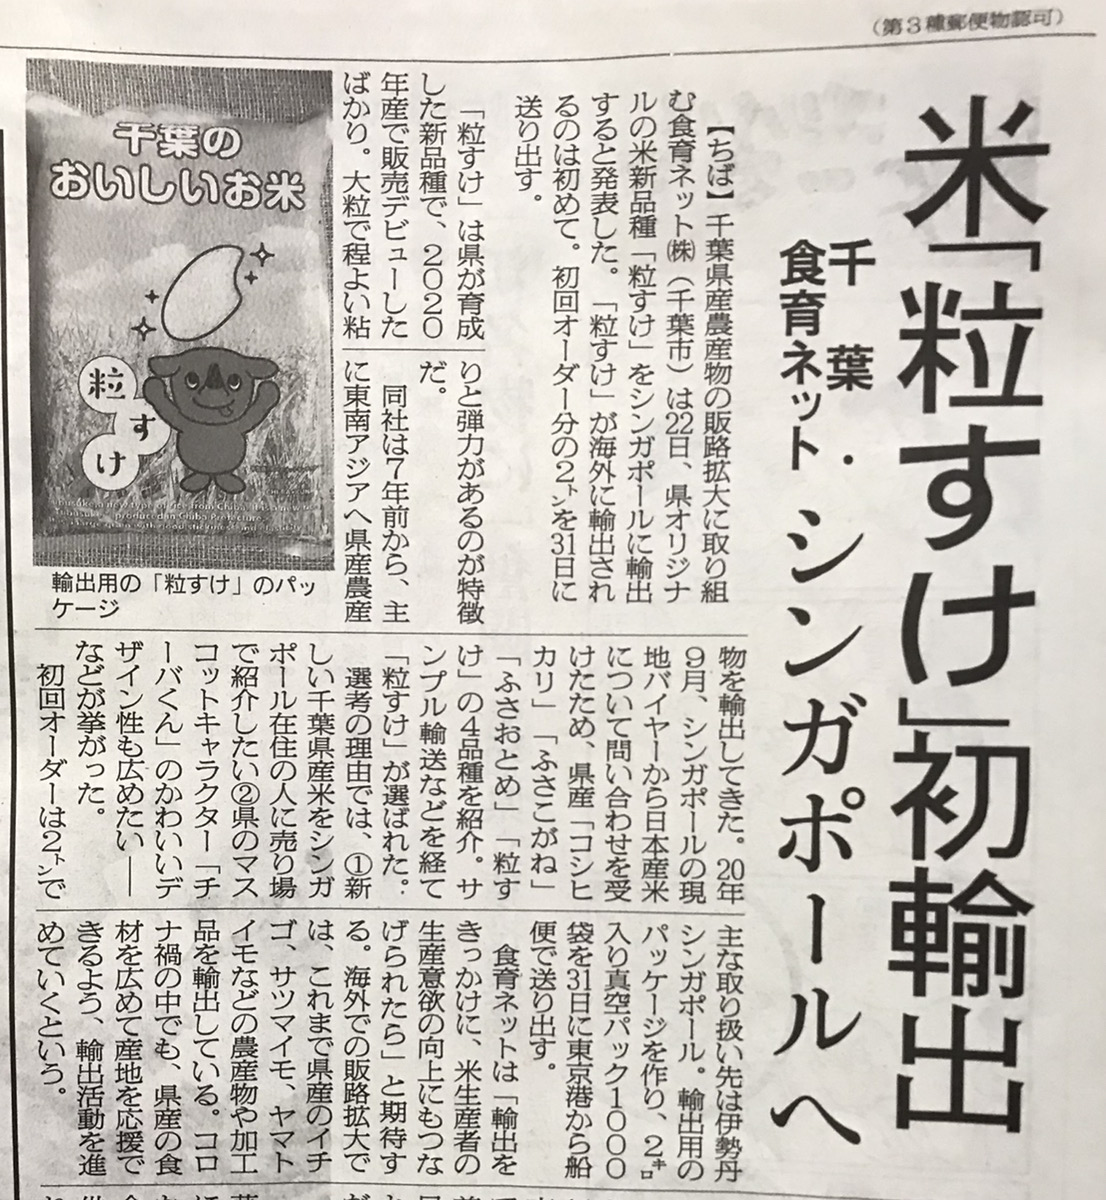 「粒すけ」が日本農業新聞様に掲載頂きました。